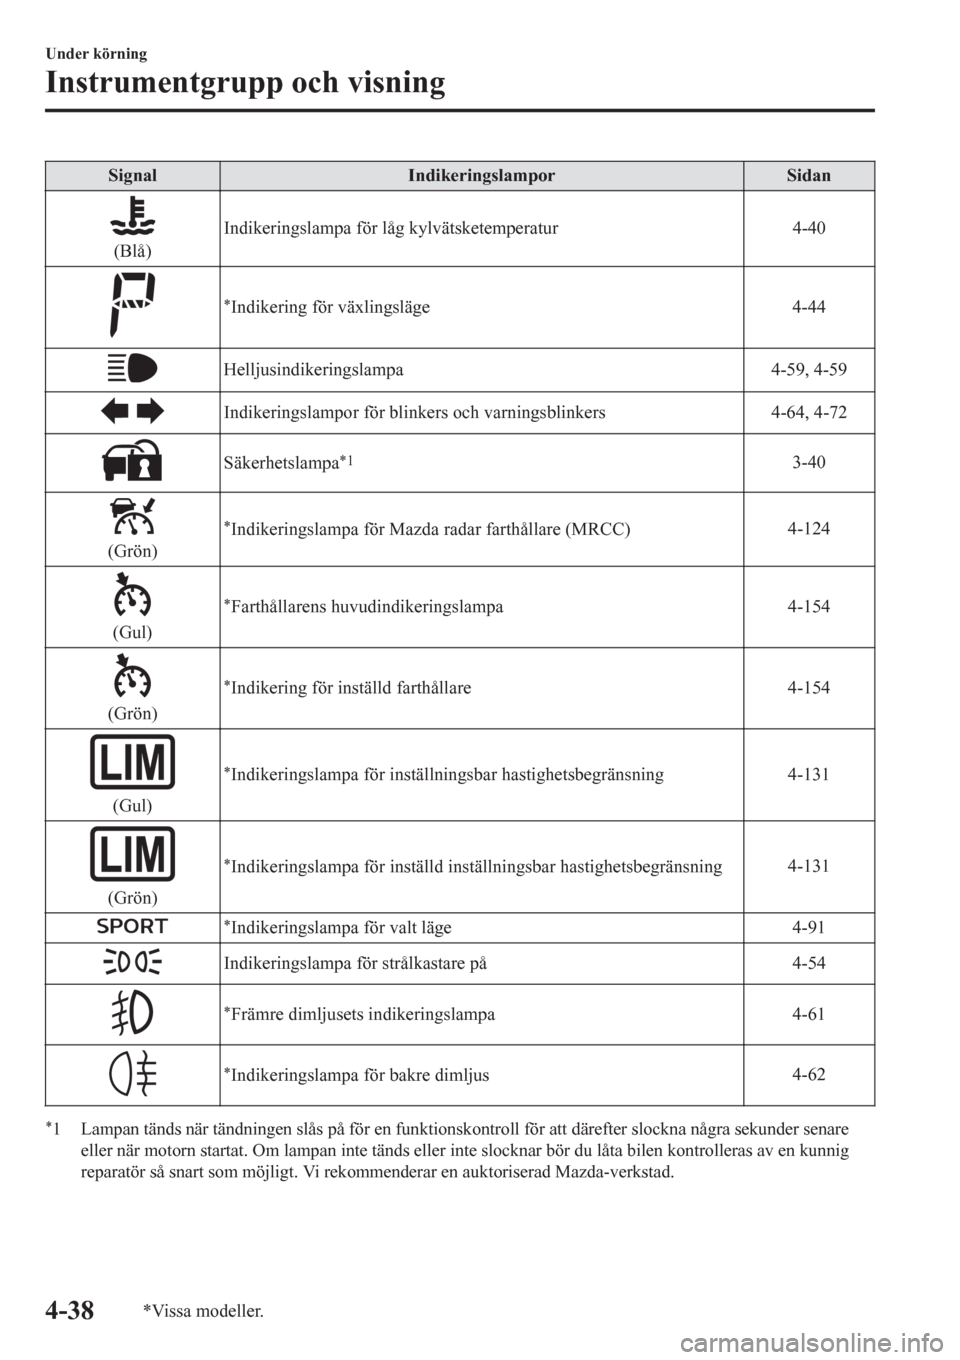 MAZDA MODEL CX-3 2016  Ägarmanual (in Swedish) Signal Indikeringslampor Sidan
(Blå)Indikeringslampa för låg kylvätsketemperatur 4-40
*Indikering för växlingsläge4-44
Helljusindikeringslampa 4-59, 4-59
Indikeringslampor för blinkers och var